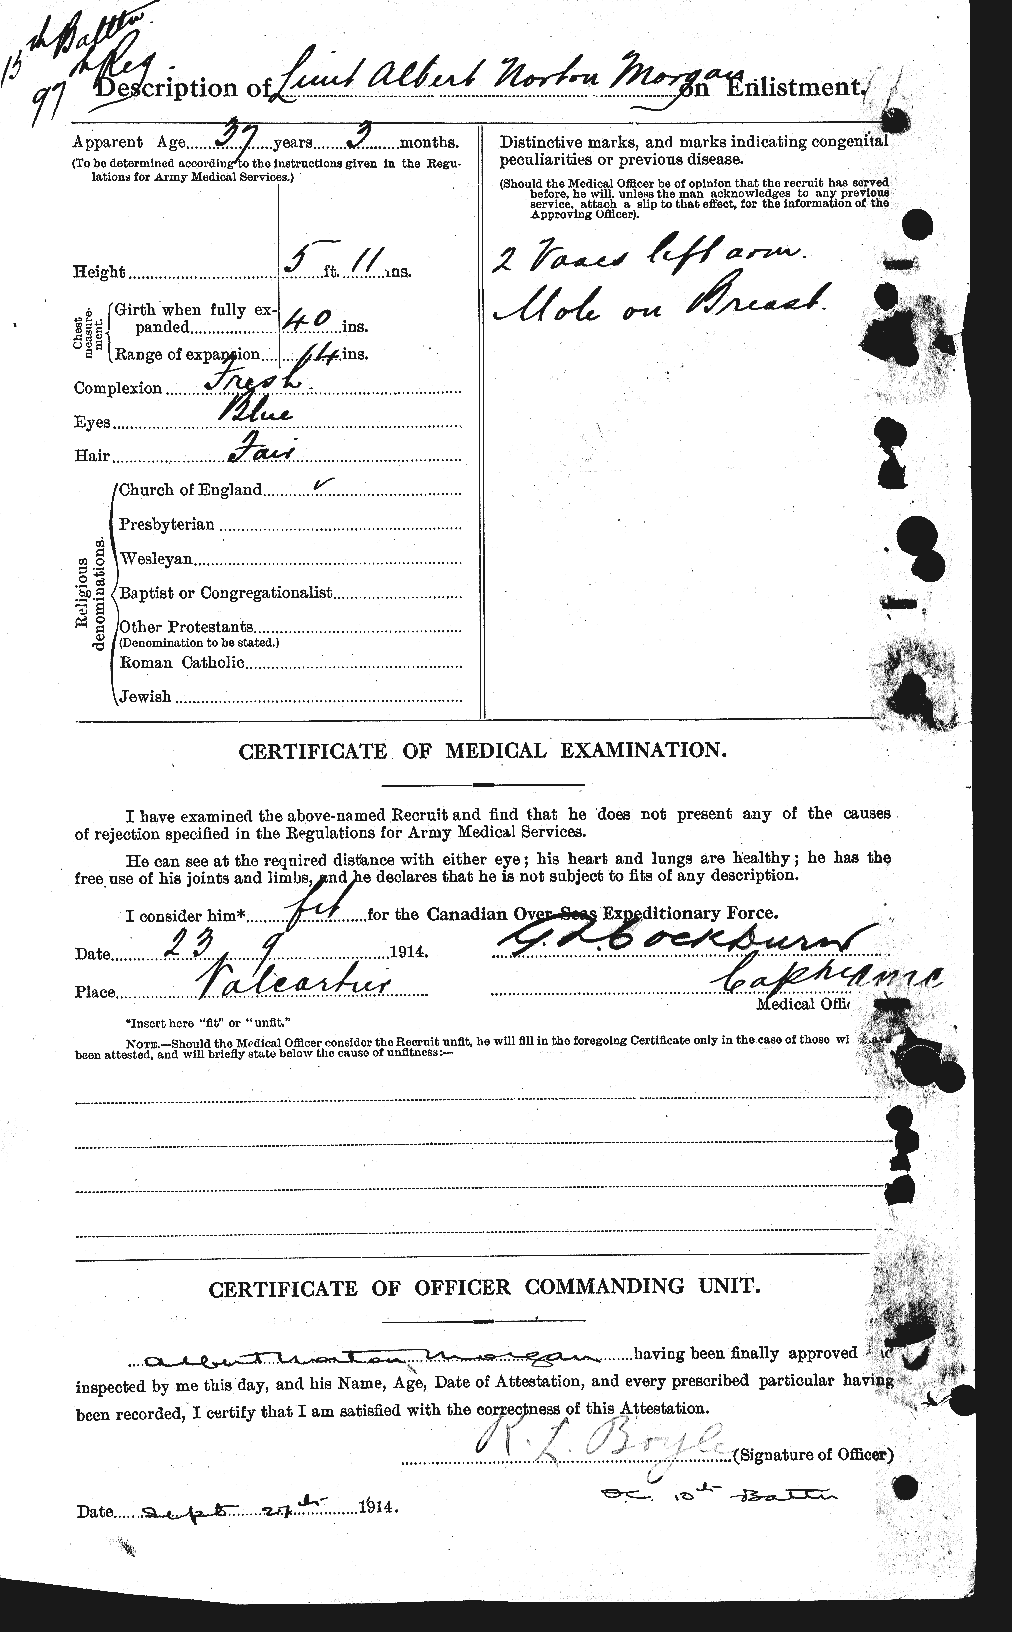 Dossiers du Personnel de la Première Guerre mondiale - CEC 507467b